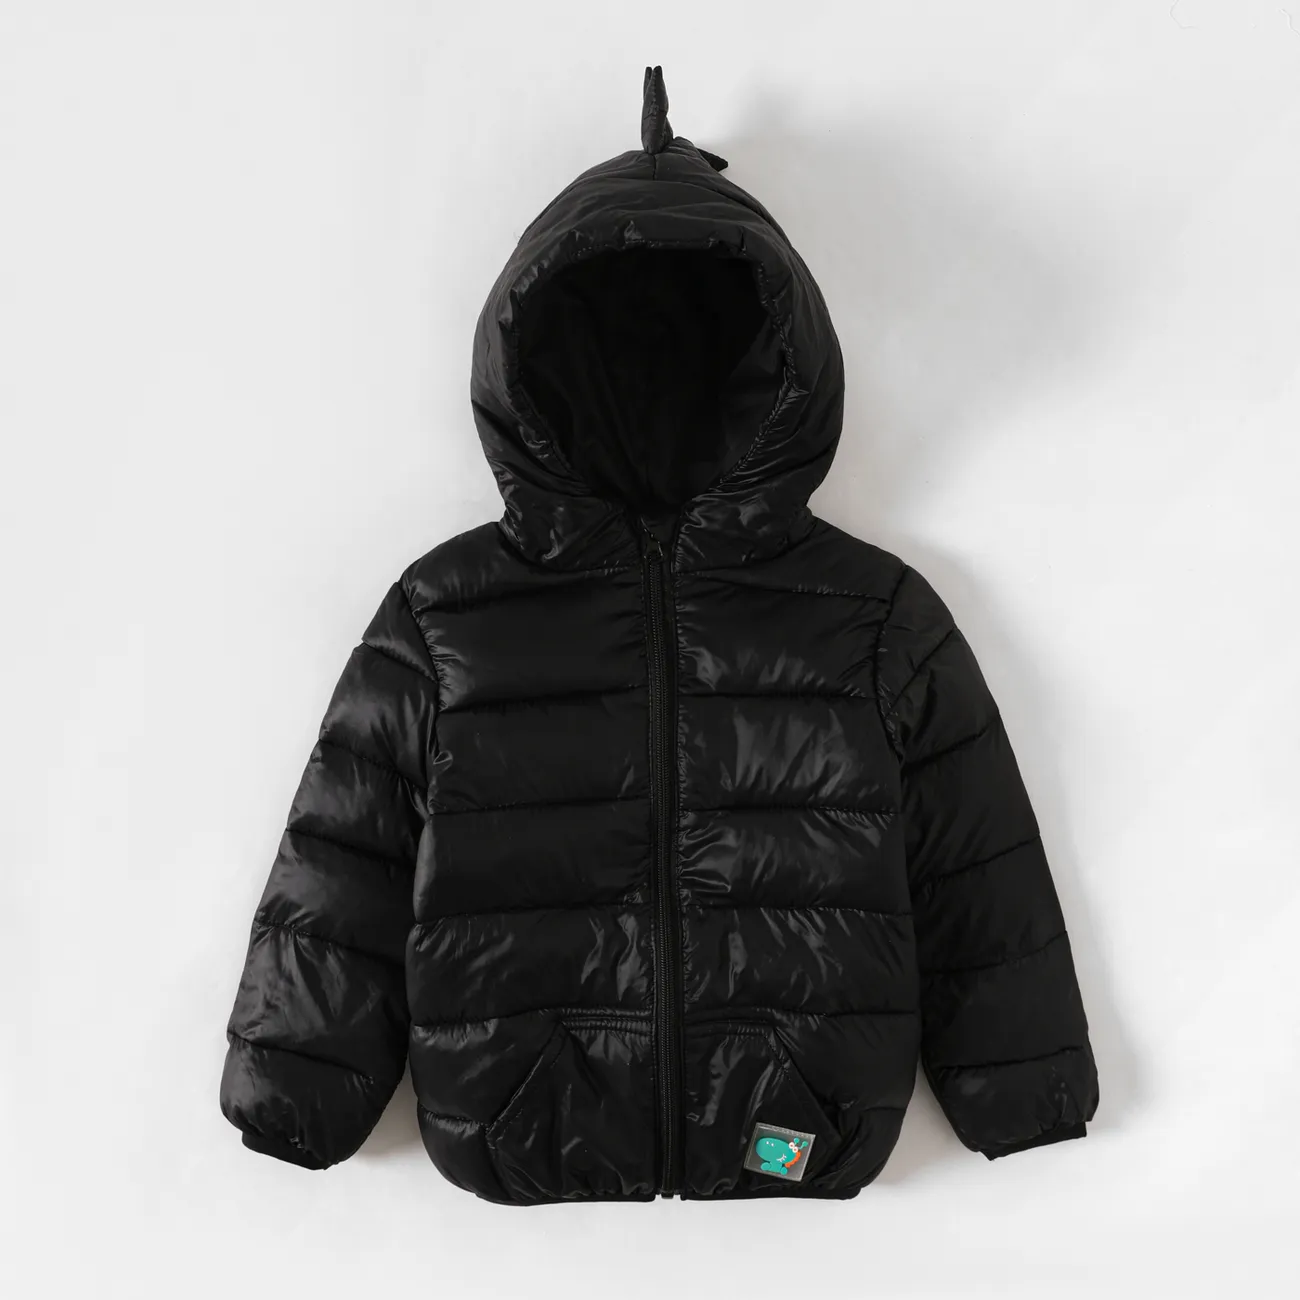 Toddler Boy/Girl Childlike Dinosaur Shape 3D Design Winter Coat Black big image 1